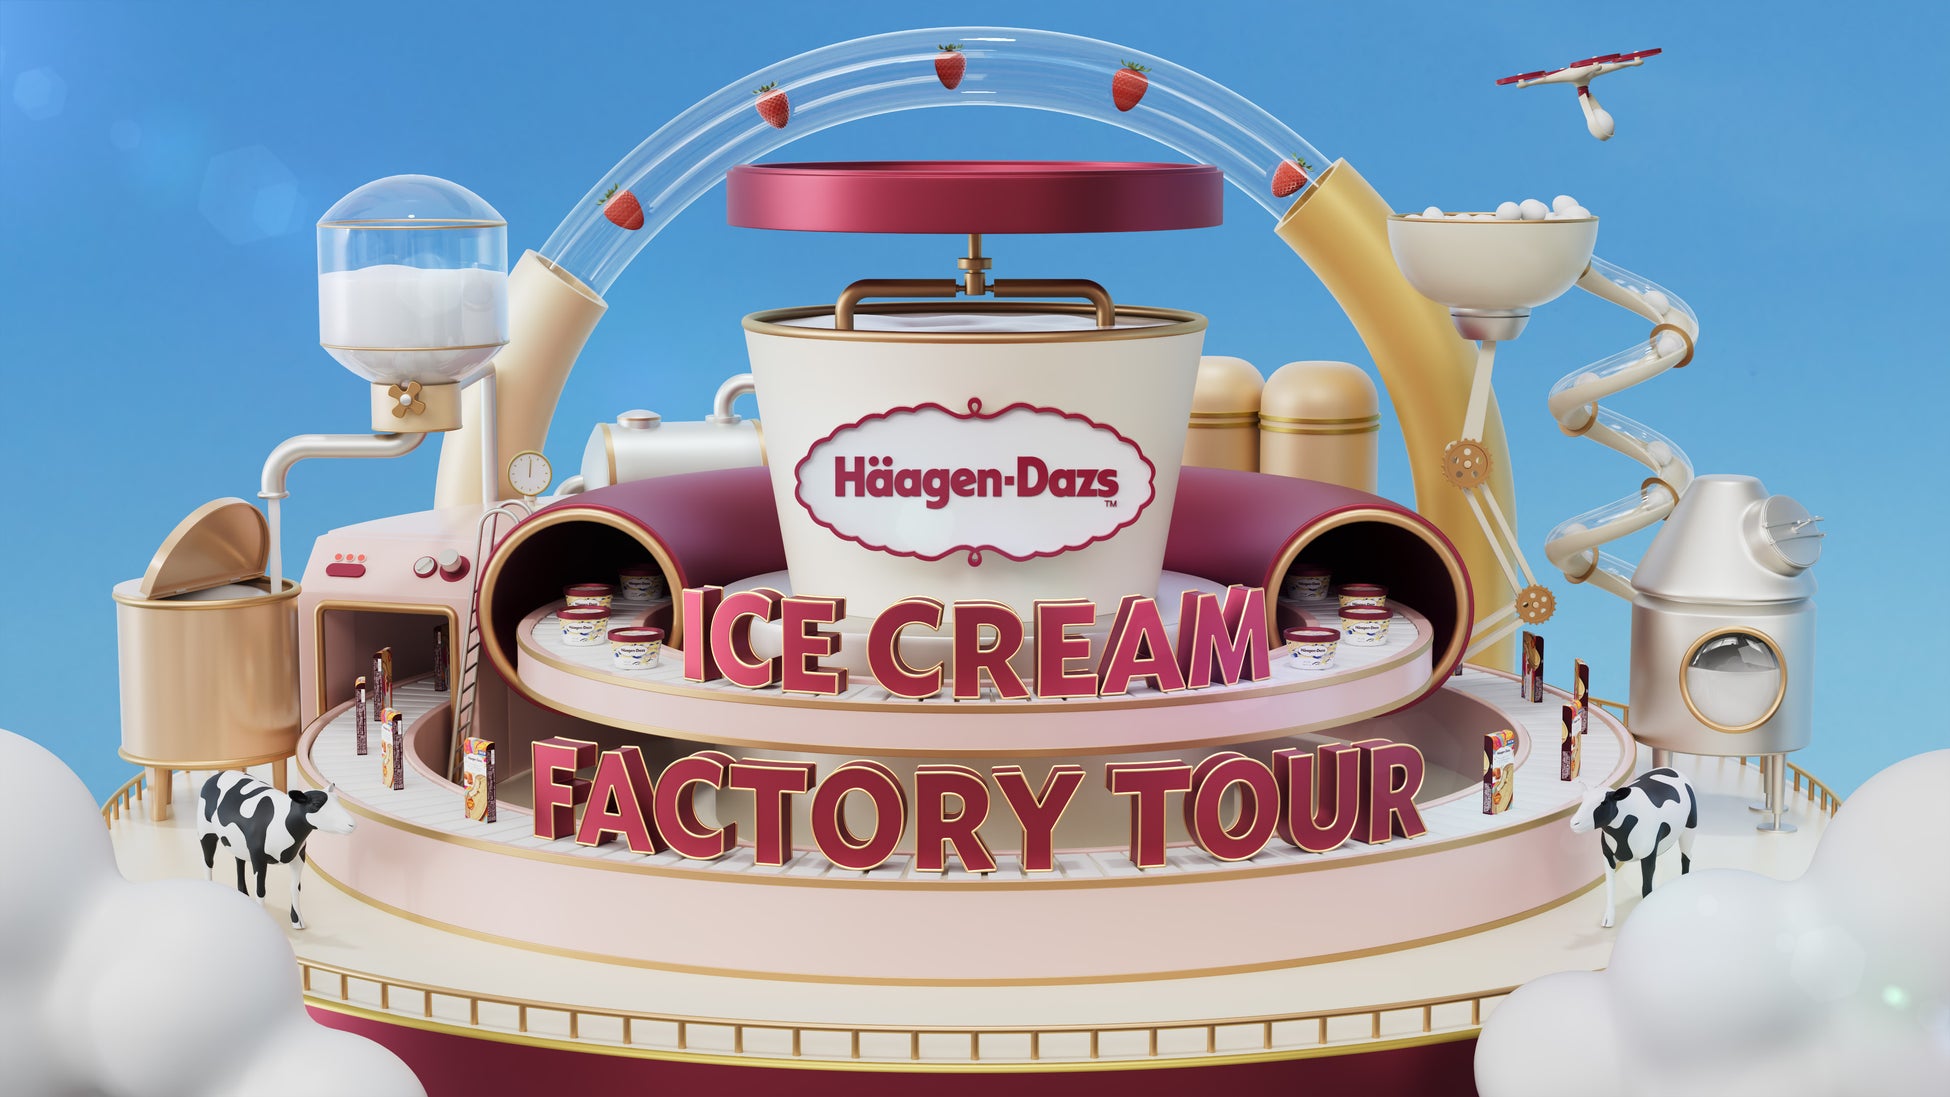 “ハーゲンダッツ群馬工場”の生産ラインを初公開！　『Häagen-Dazs ICE CREAM FACTORY TOUR』本日公開　アイスクリームの製造工程が楽しく学べるバーチャル工場見学